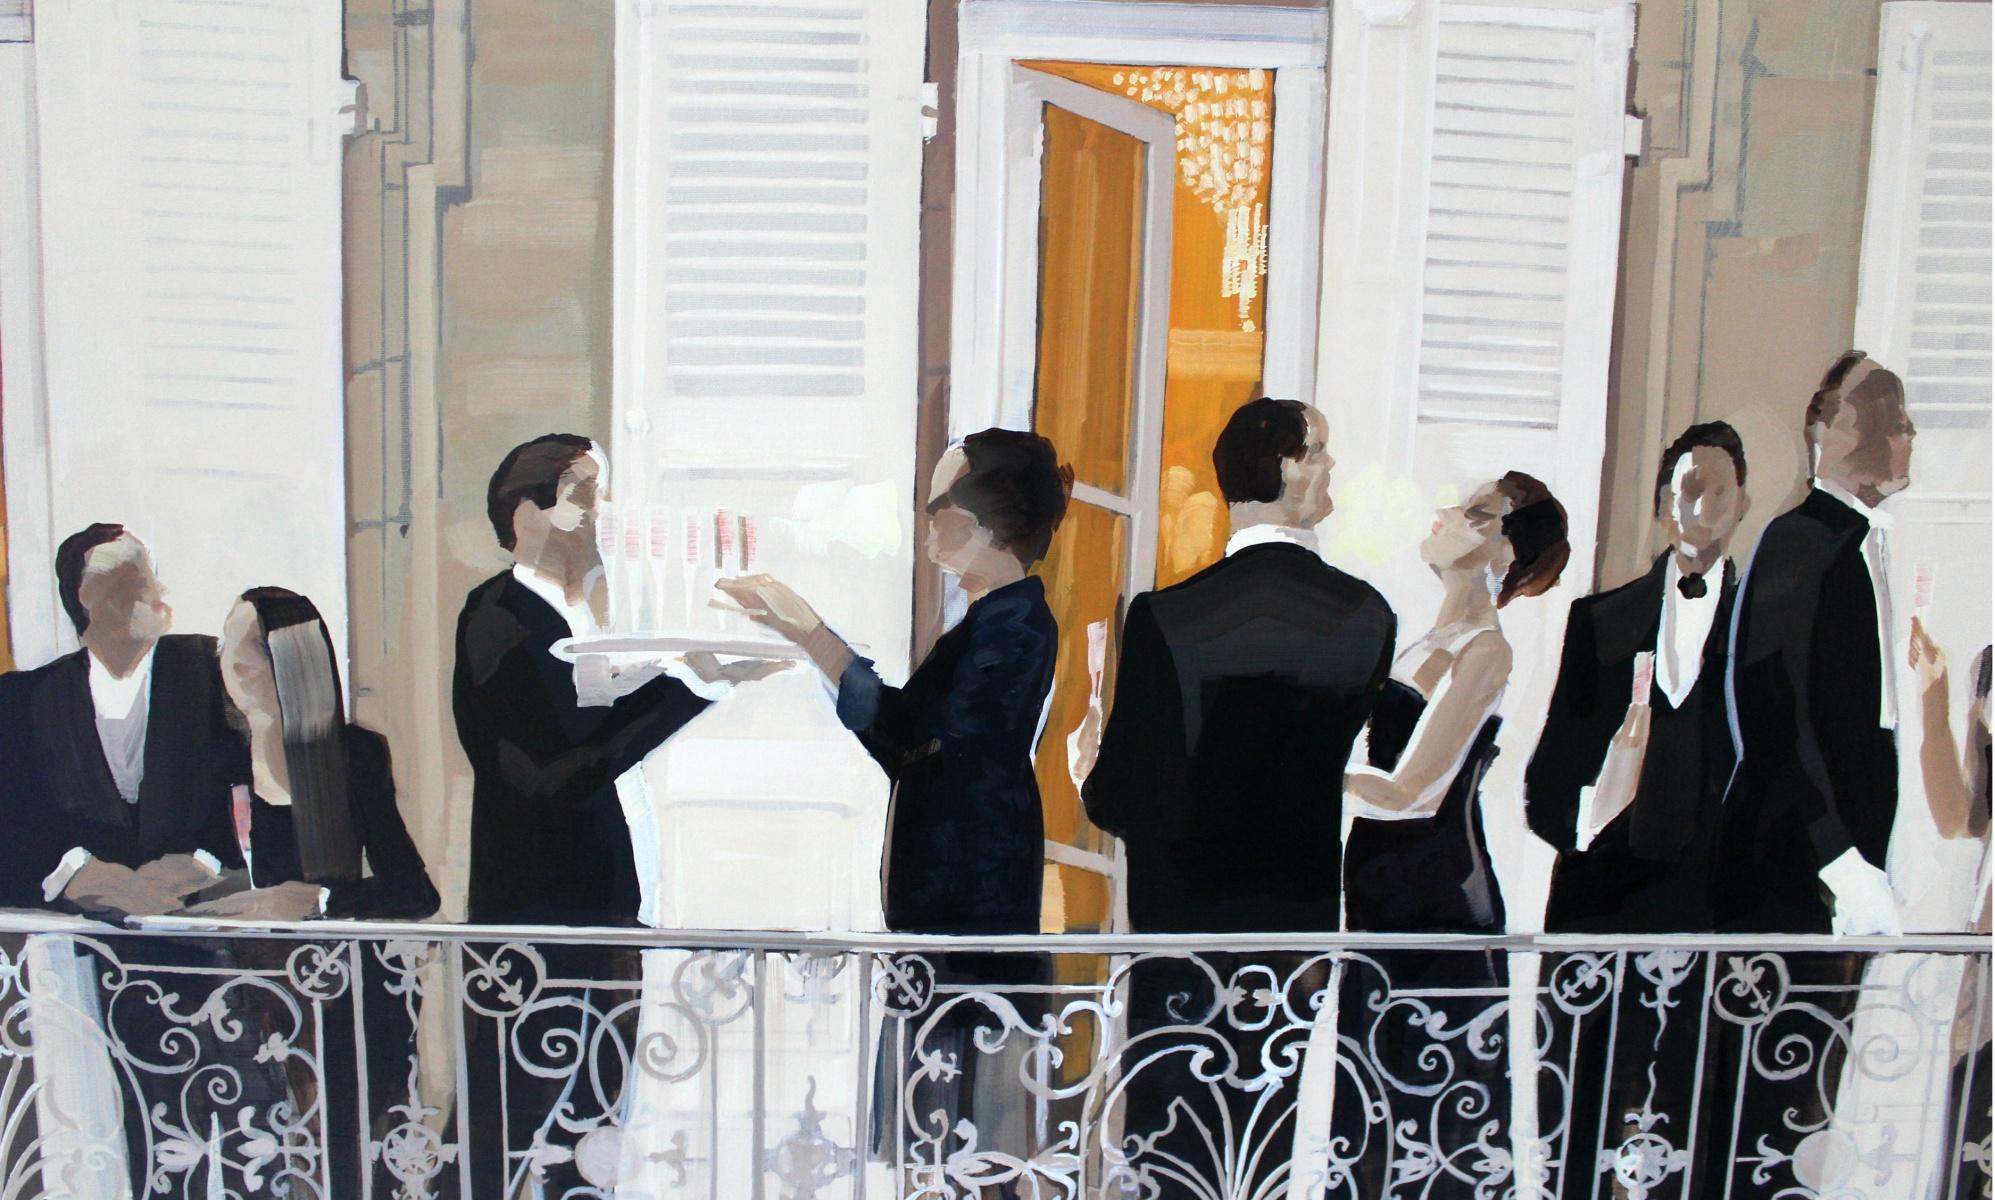 Balcony - Painting by Marek Okrassa